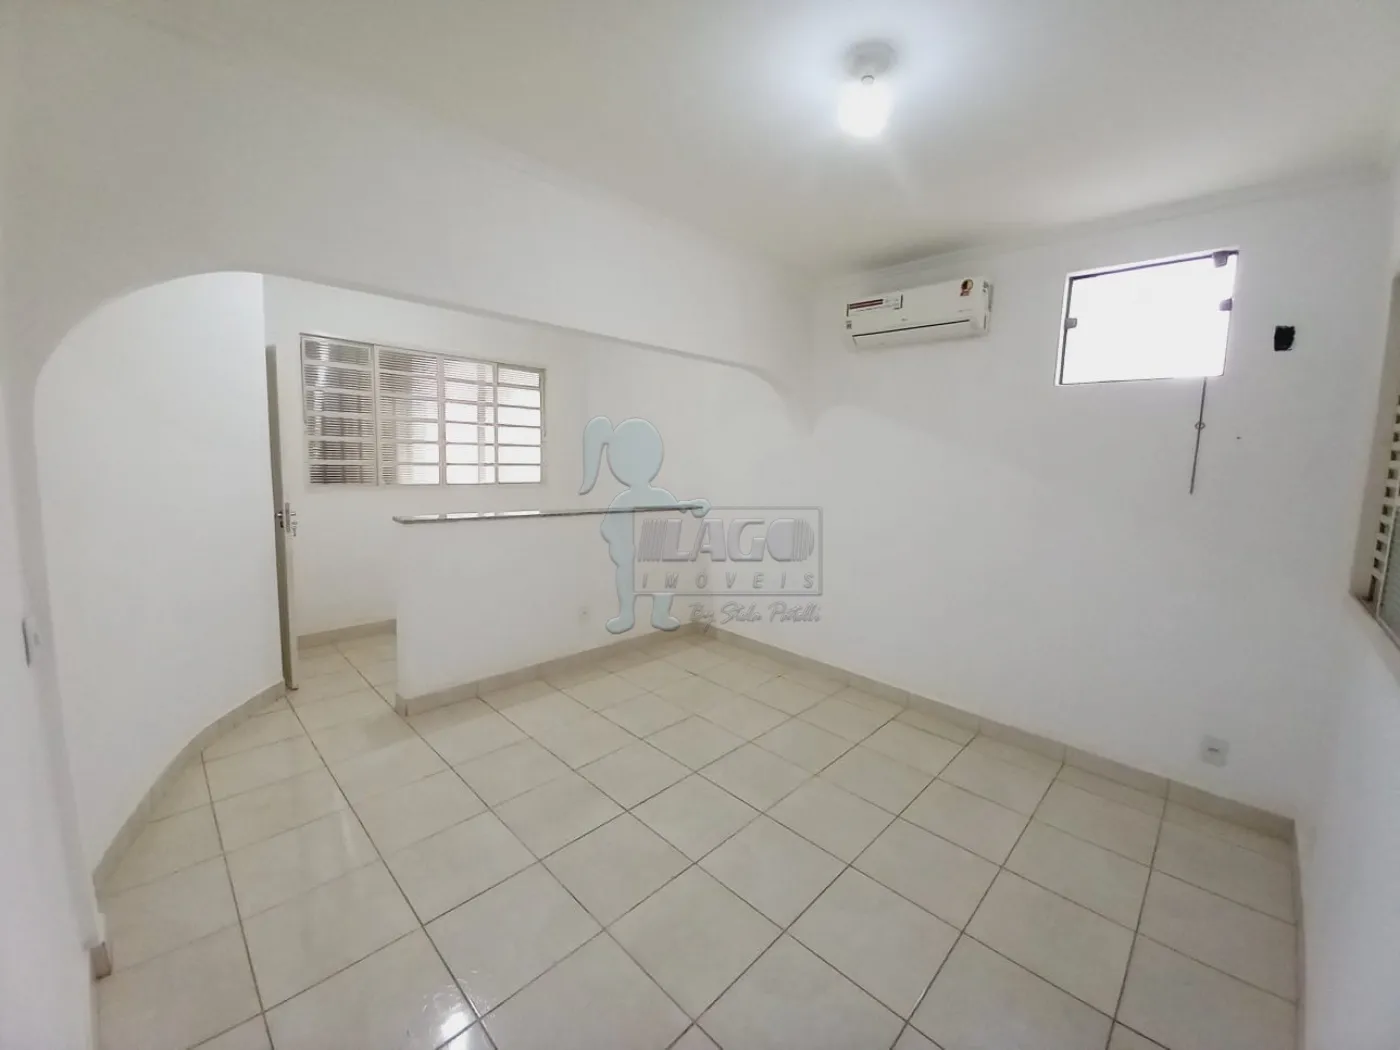 Alugar Casa / Padrão em Ribeirão Preto R$ 1.400,00 - Foto 3